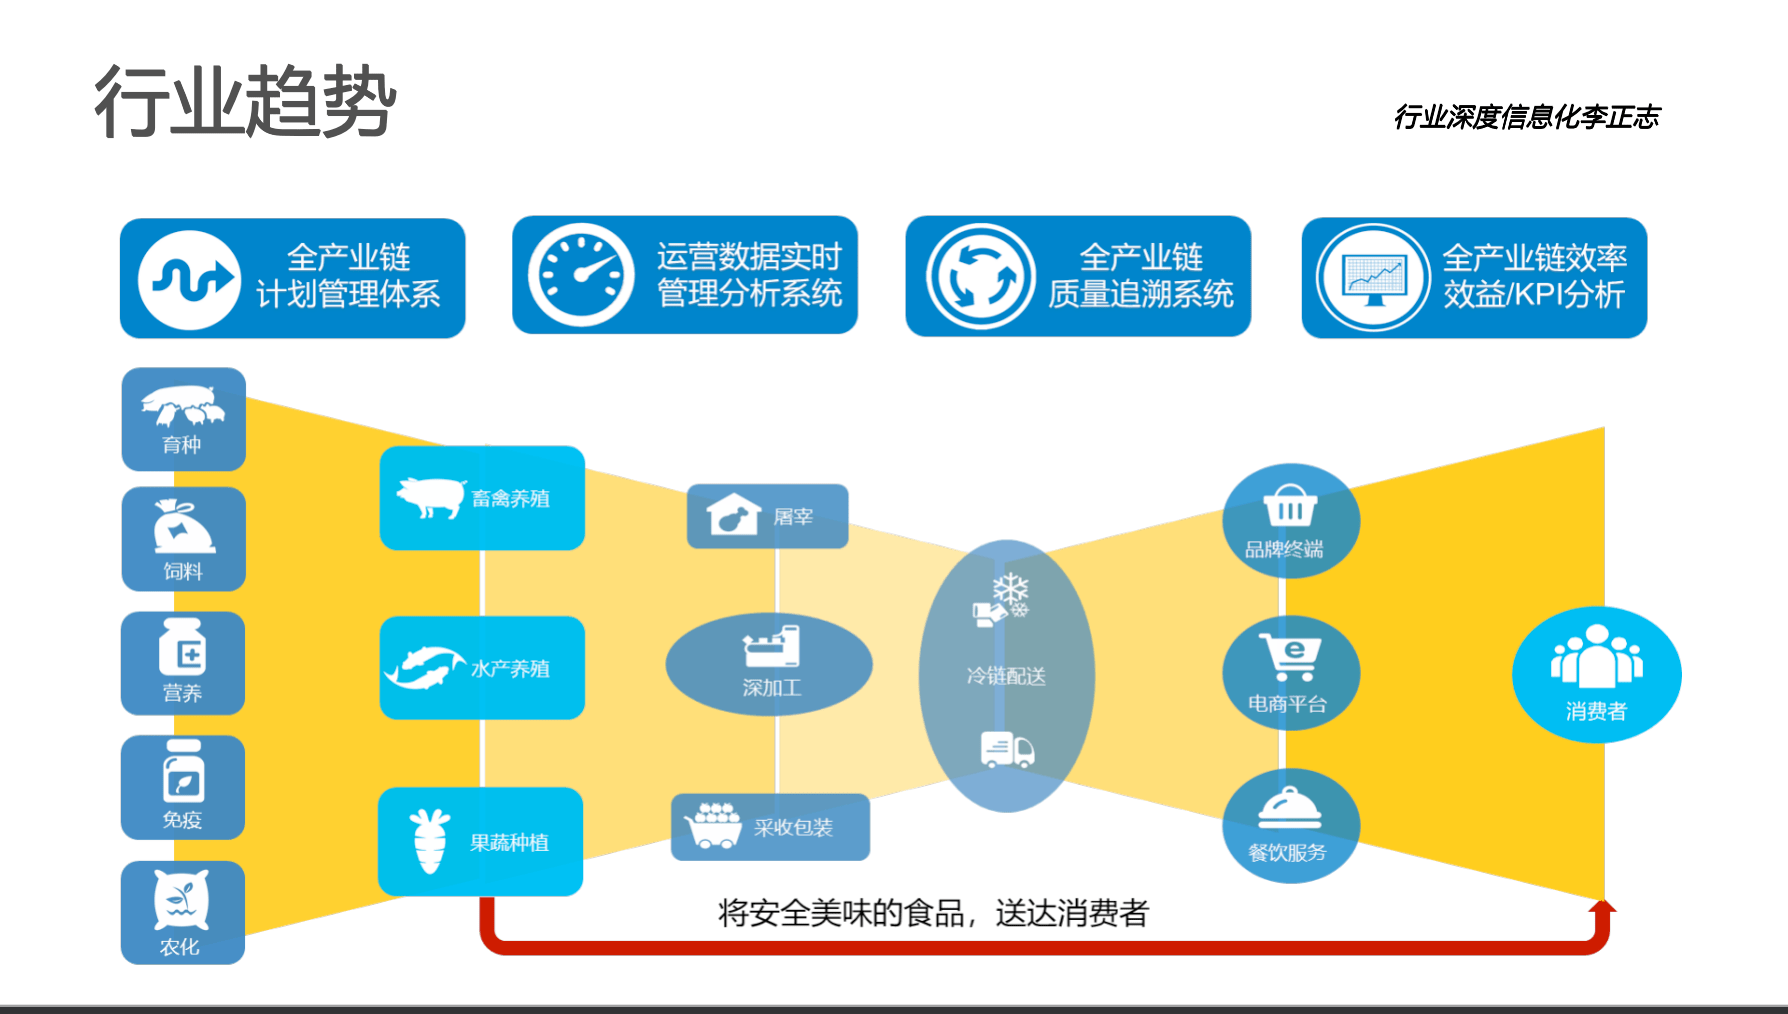 宝运莱官网华夏农牧行业讯息化结构-天主视角数字化运营(图4)